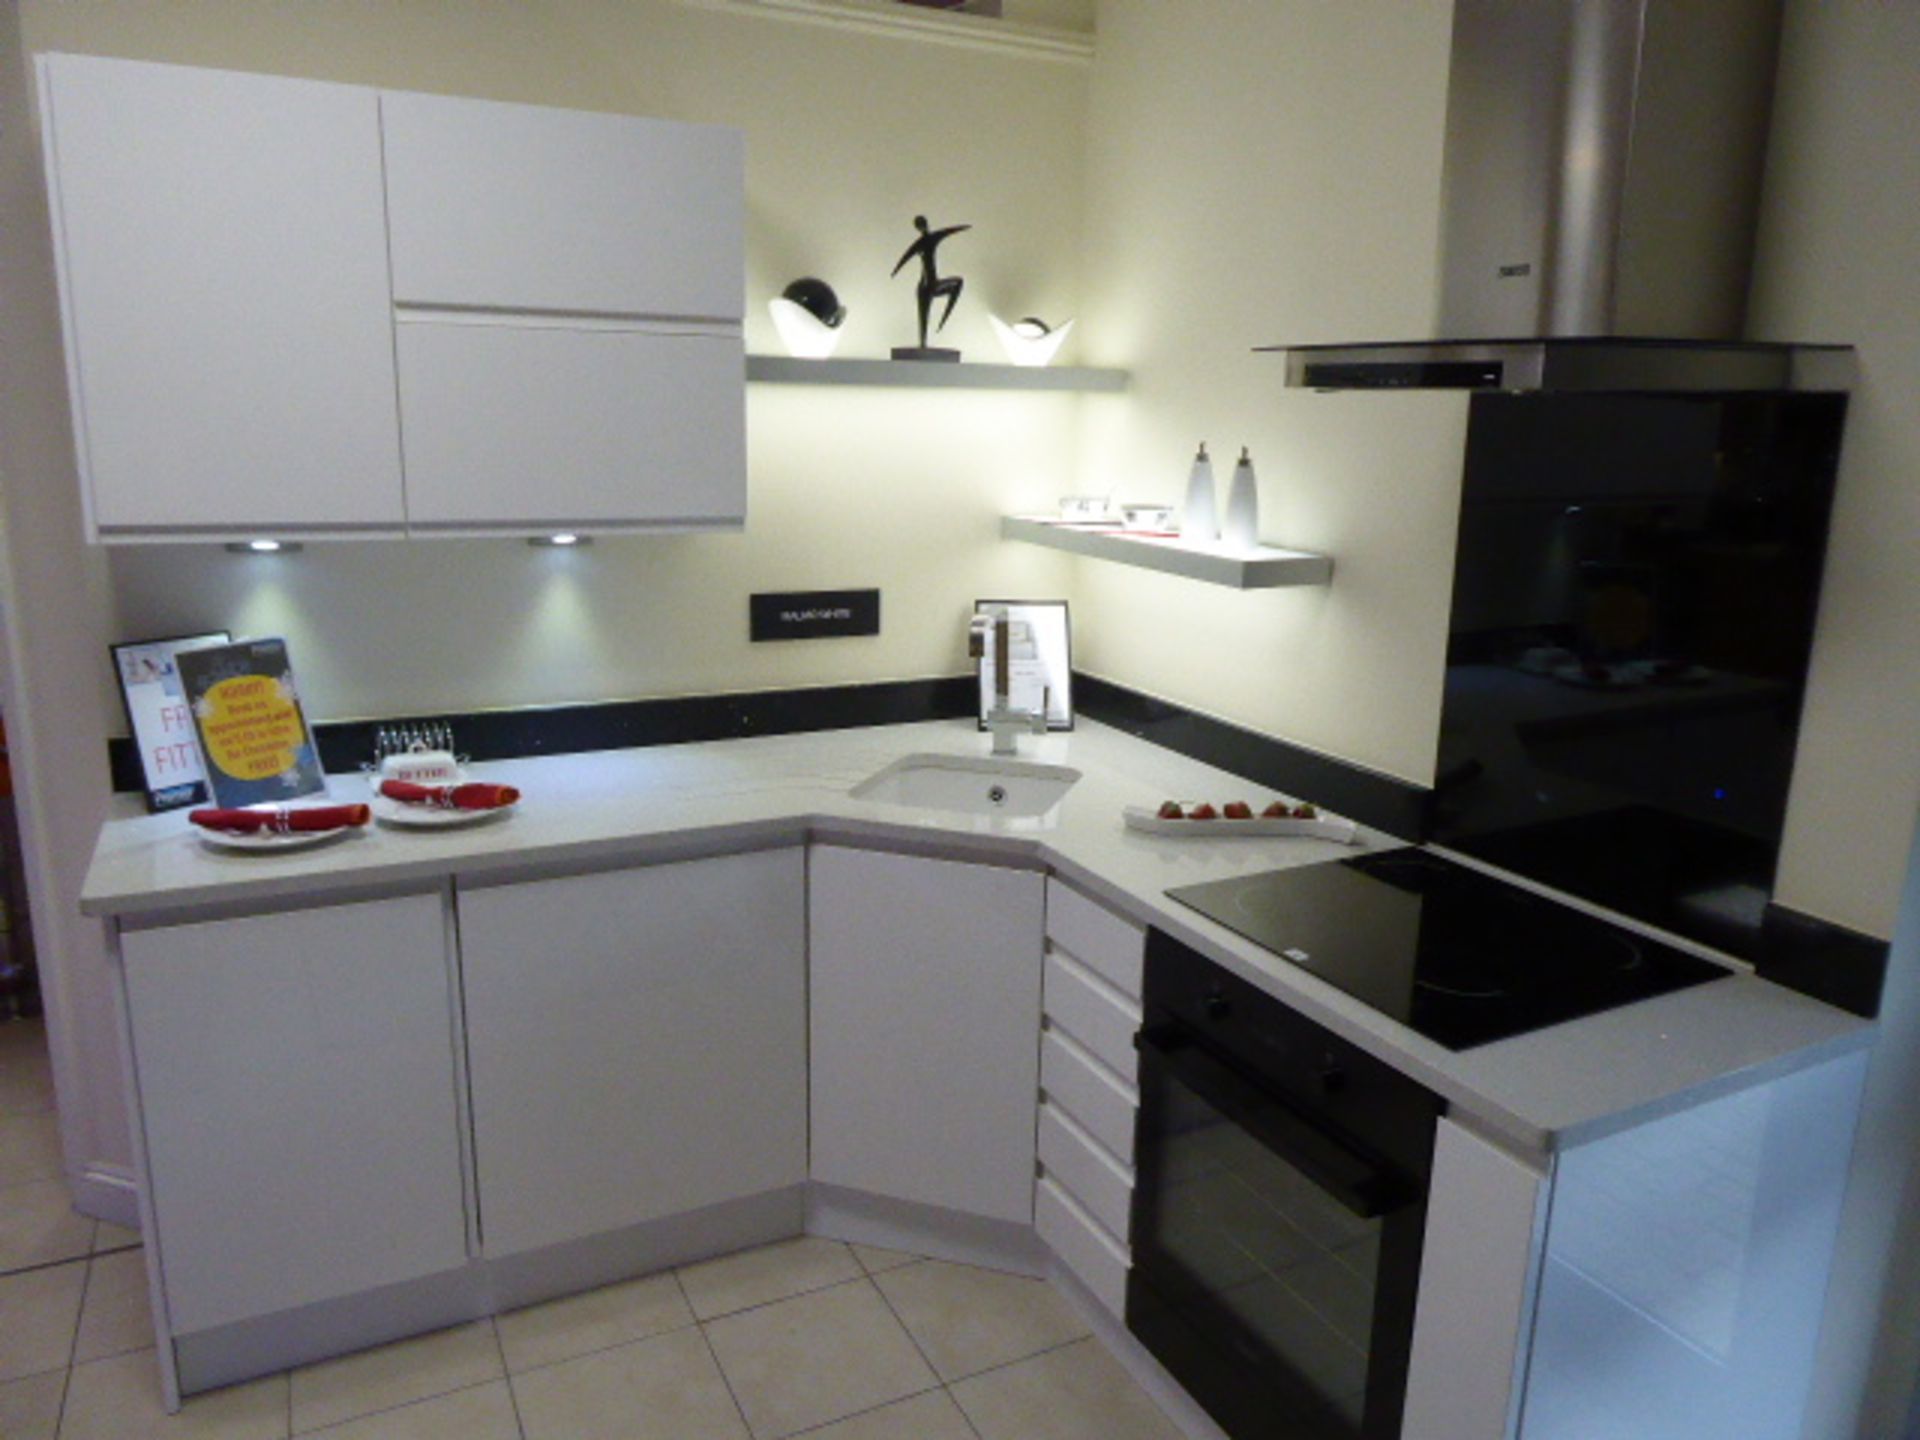 Malmo White kitchen in corner shape with a Technistone starlight white worktop. Max dimensions 200cm